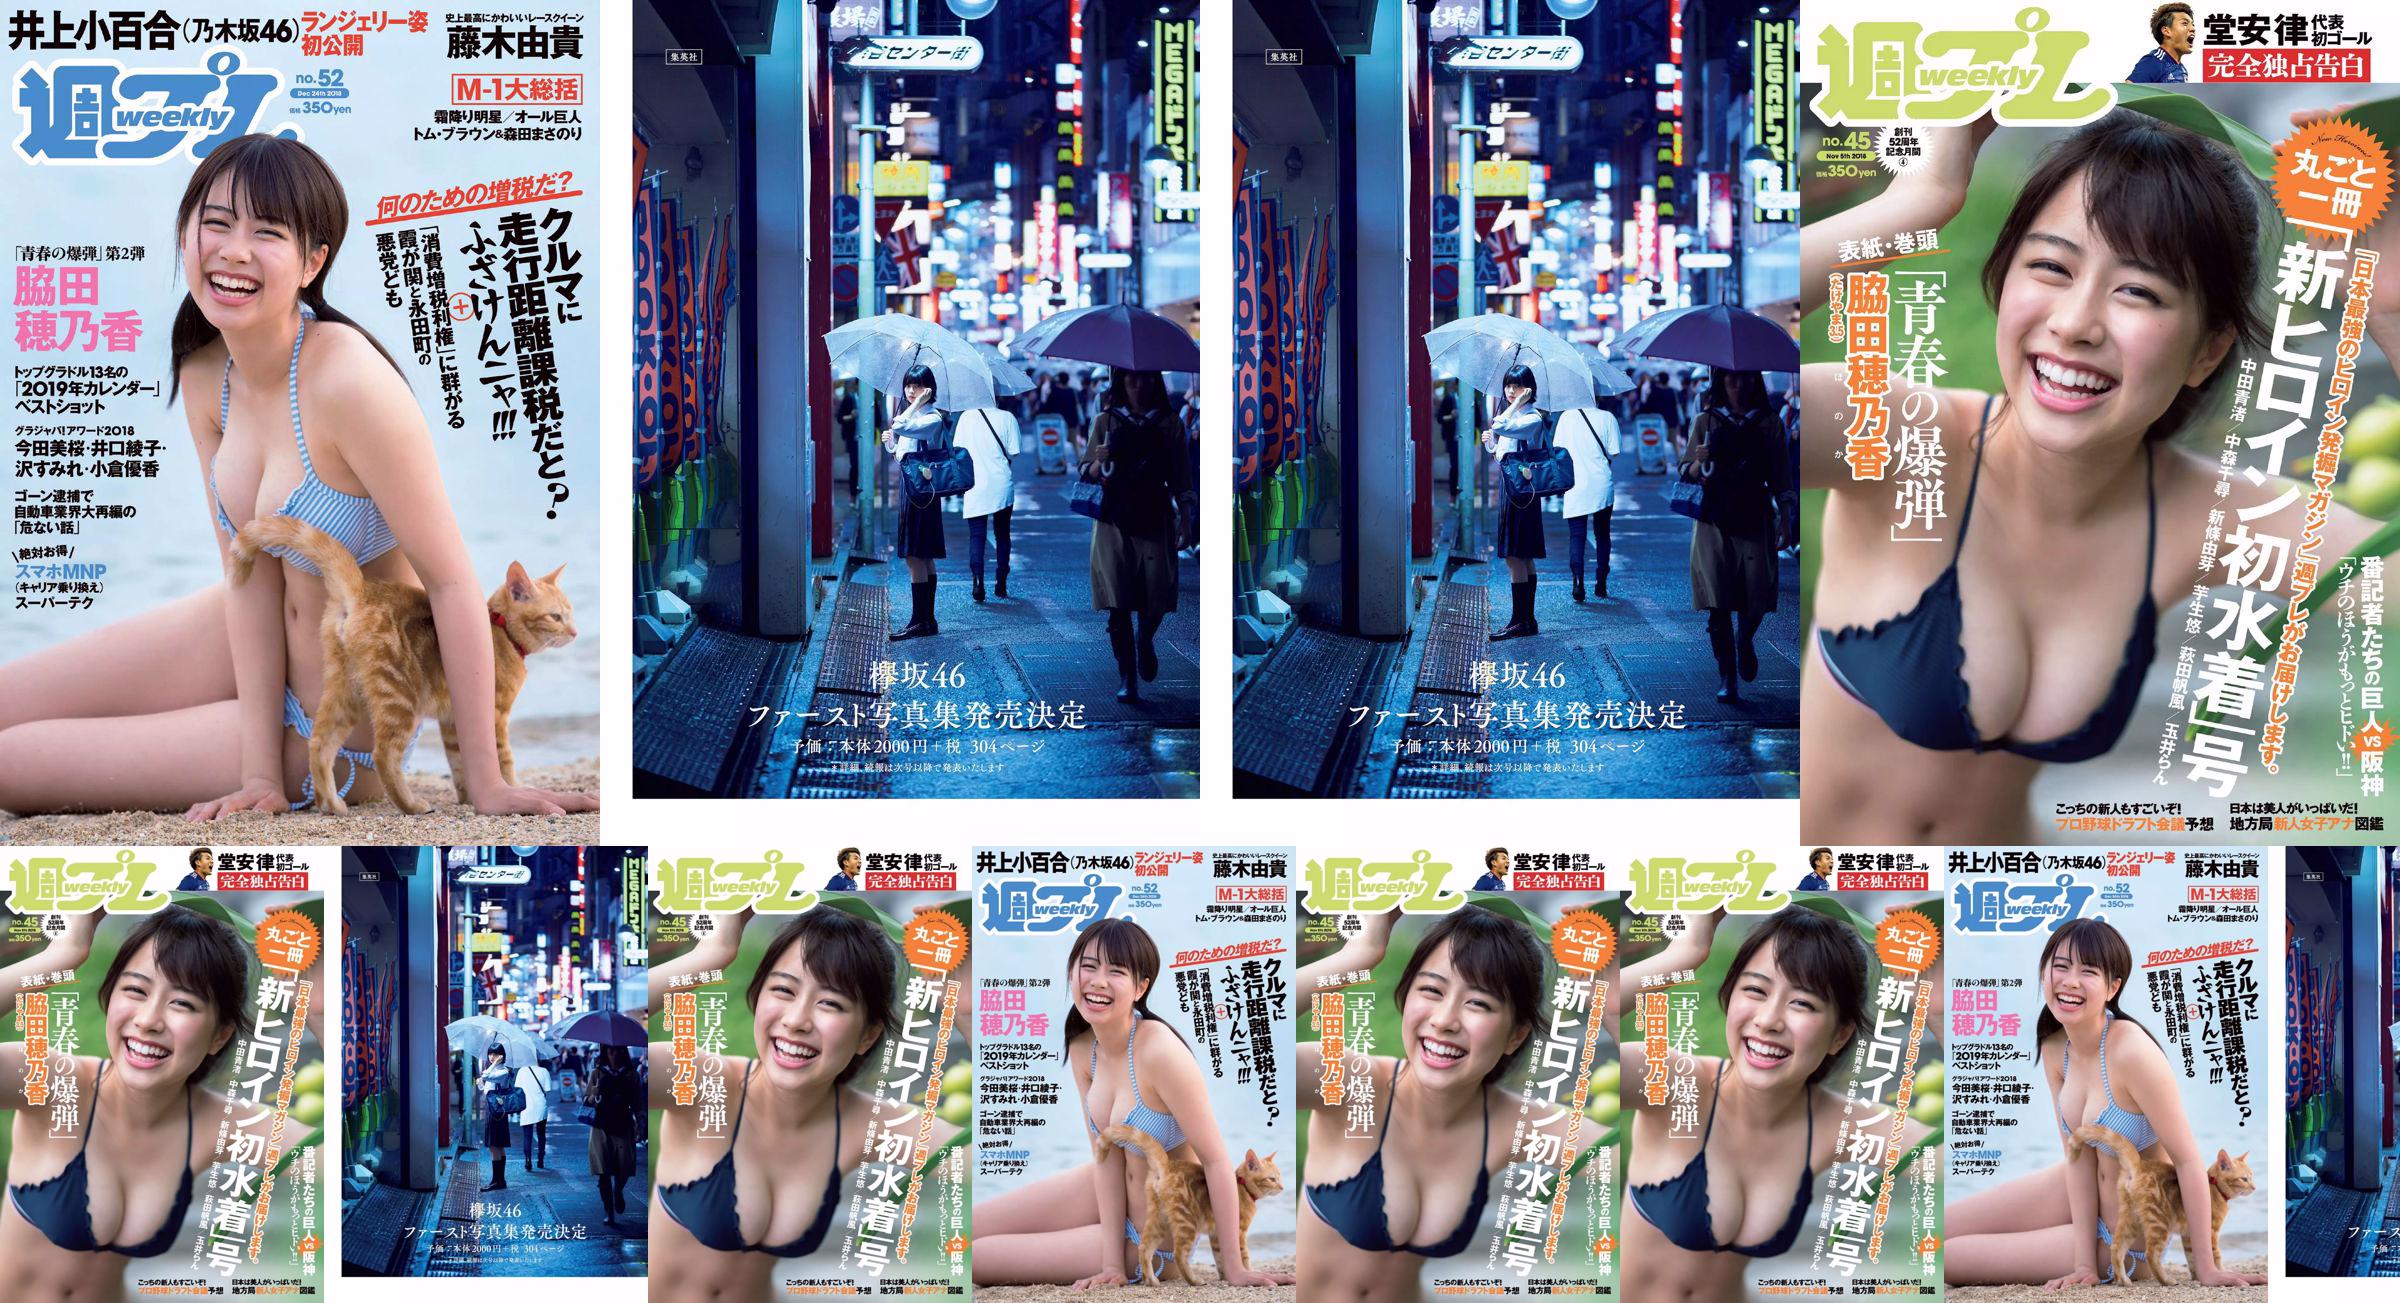 Honoka Hagita Seina Nakata Chihiro Nakamori Yume Shinjo Yuu Imou Honoka Hagita Ran Tamai [Playboy Semanal] 2018 Foto No.45 No.2df449 Página 63